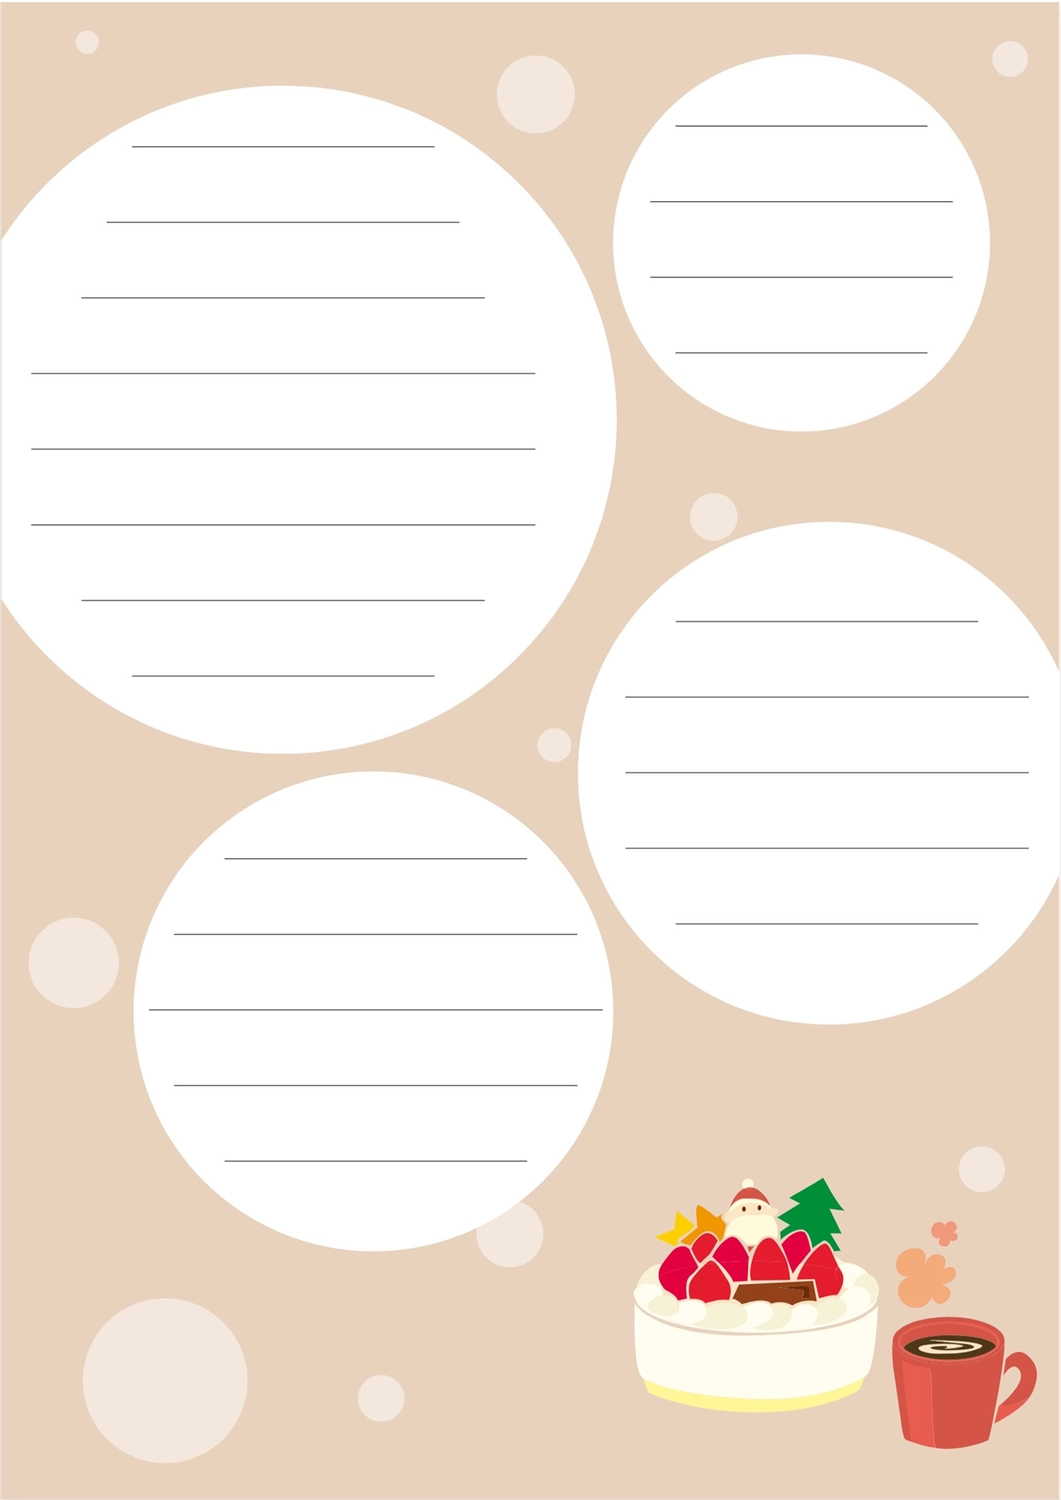 便箋（クリスマスケーキとマグカップのドリンク柄）, 편지, 삽화, 괘선, 편지지 템플릿